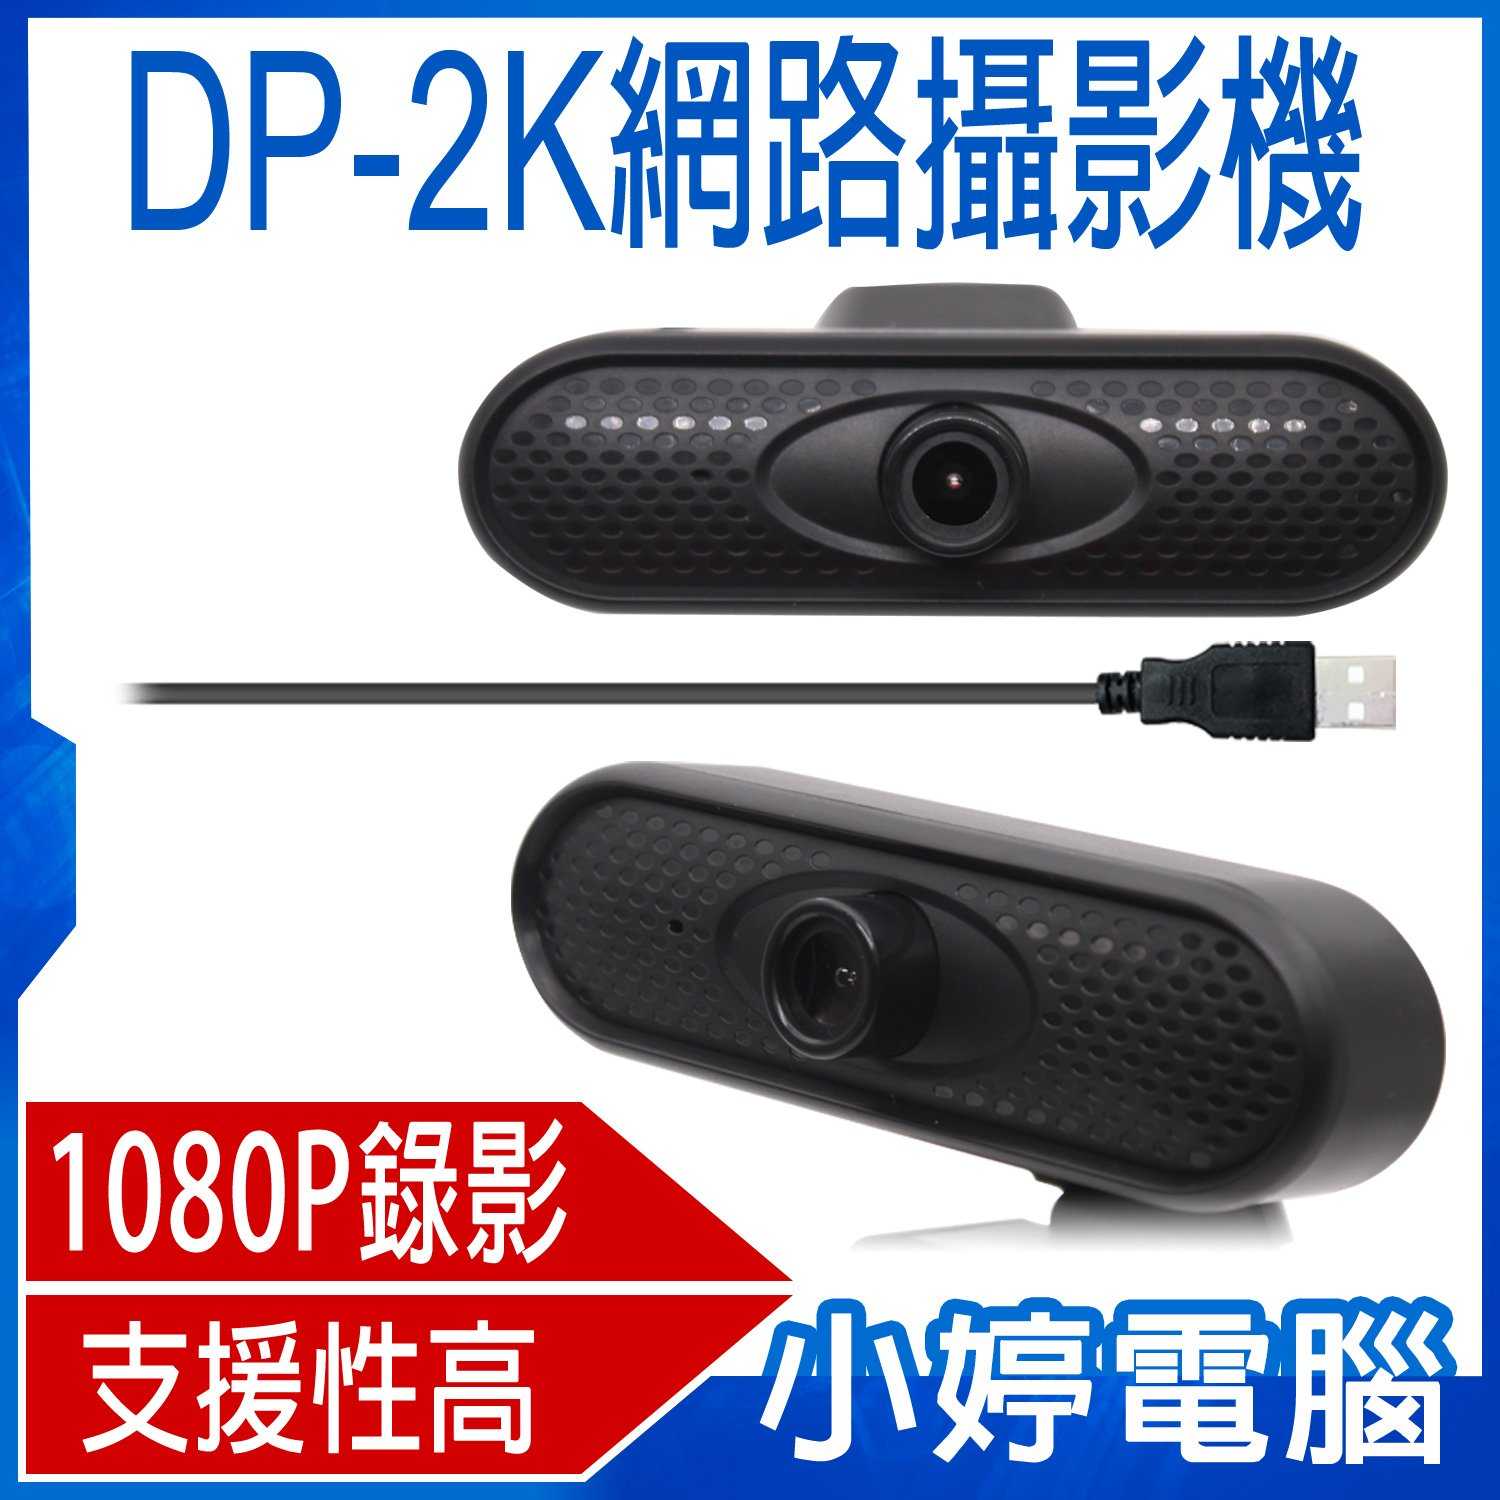 【小婷電腦】DP-2K網路攝影機 1080P錄影照相 立式夾式 支援性高 USB隨插即用